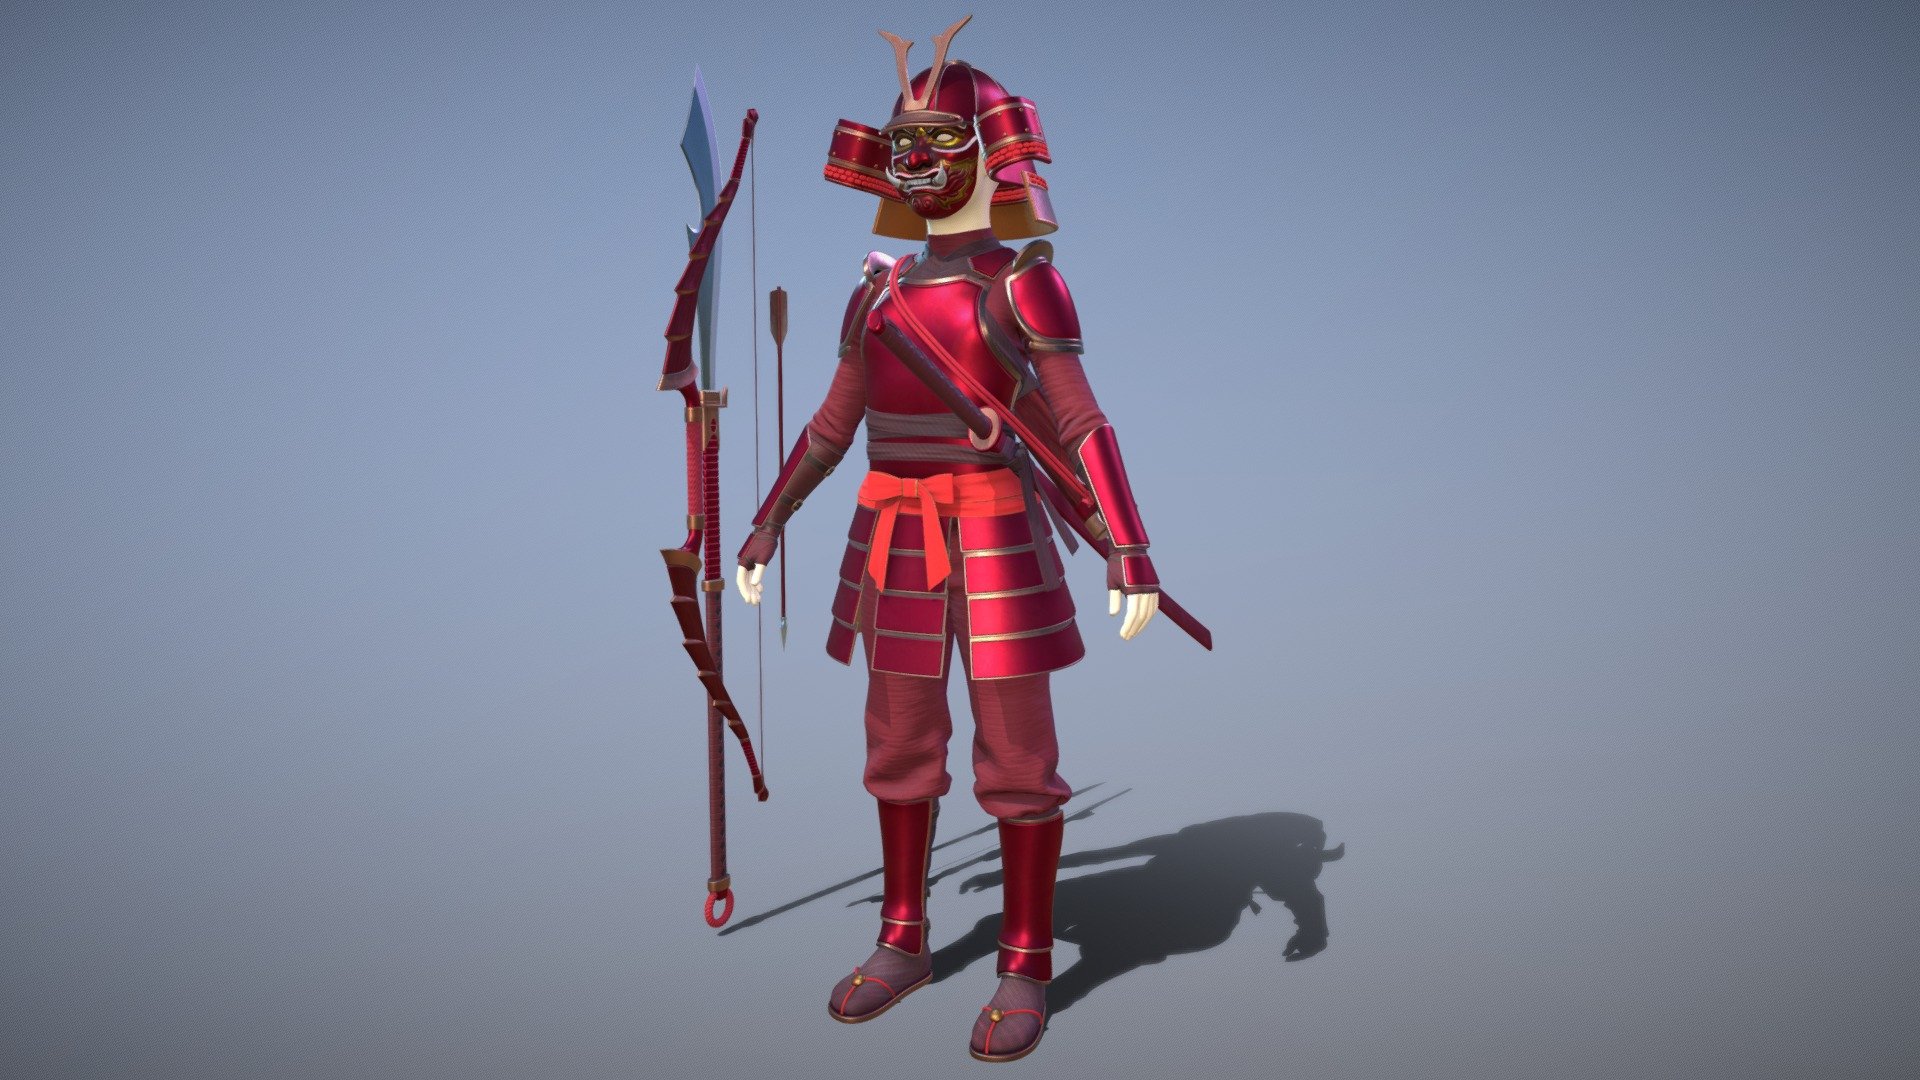 Samurai famale armor